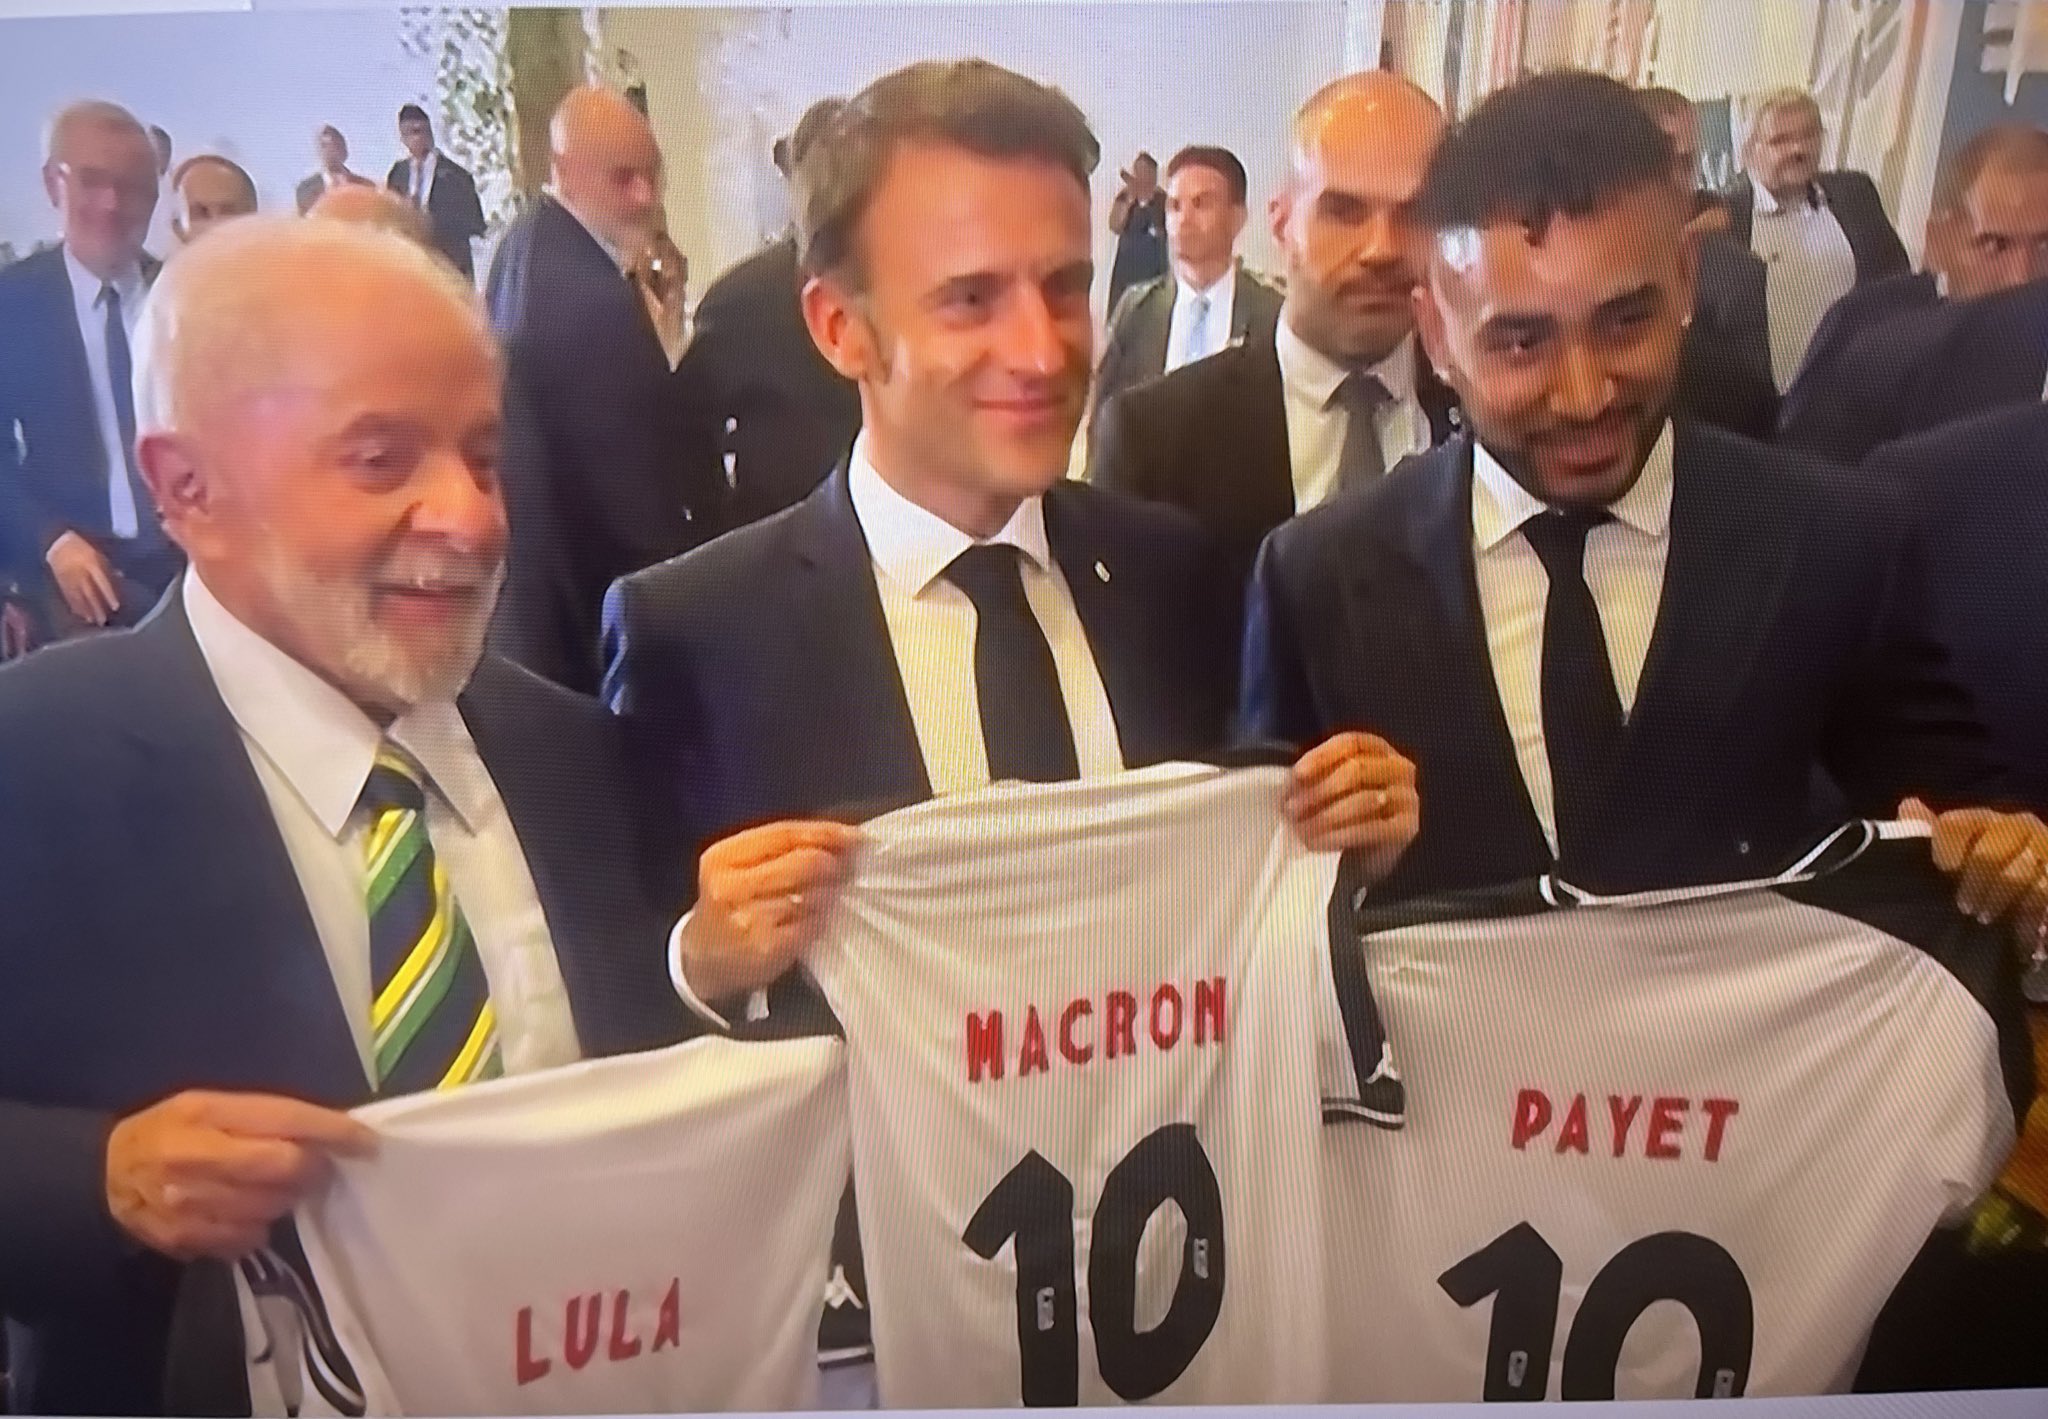 Payet com Lula e Marcon (Foto: Reprodução/Globo News)